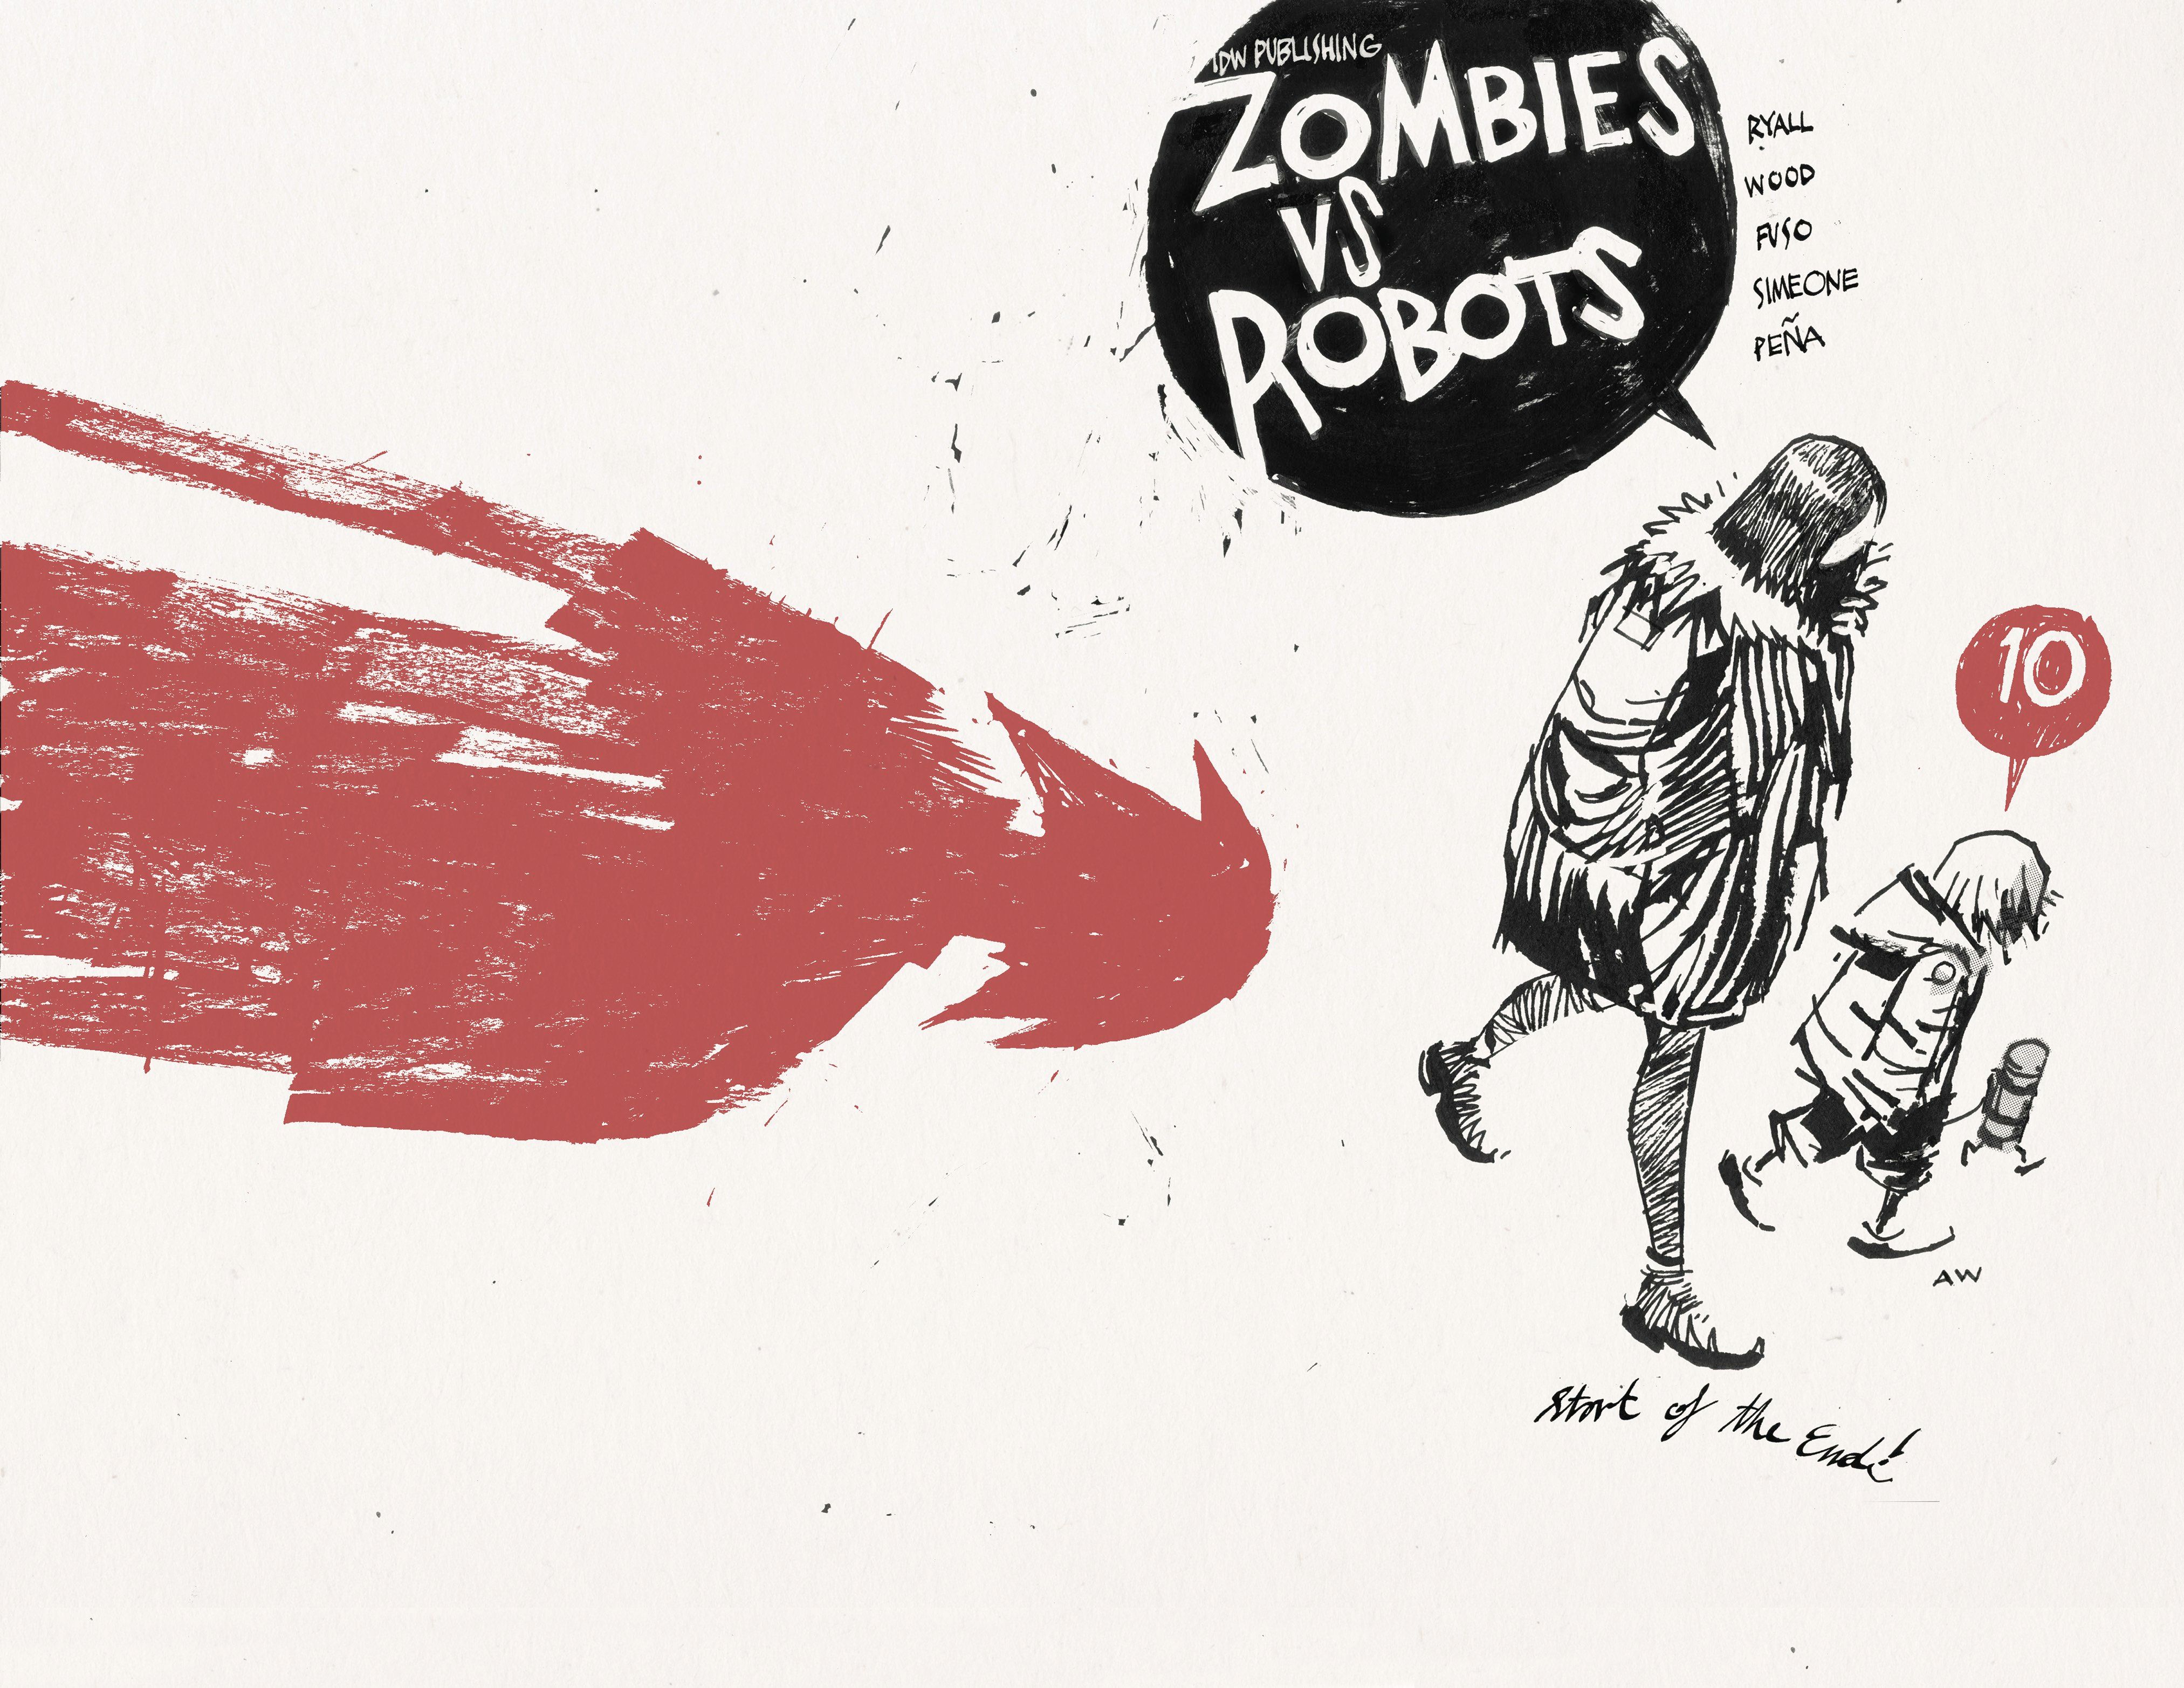 Zombies vs Robots #10 Comic